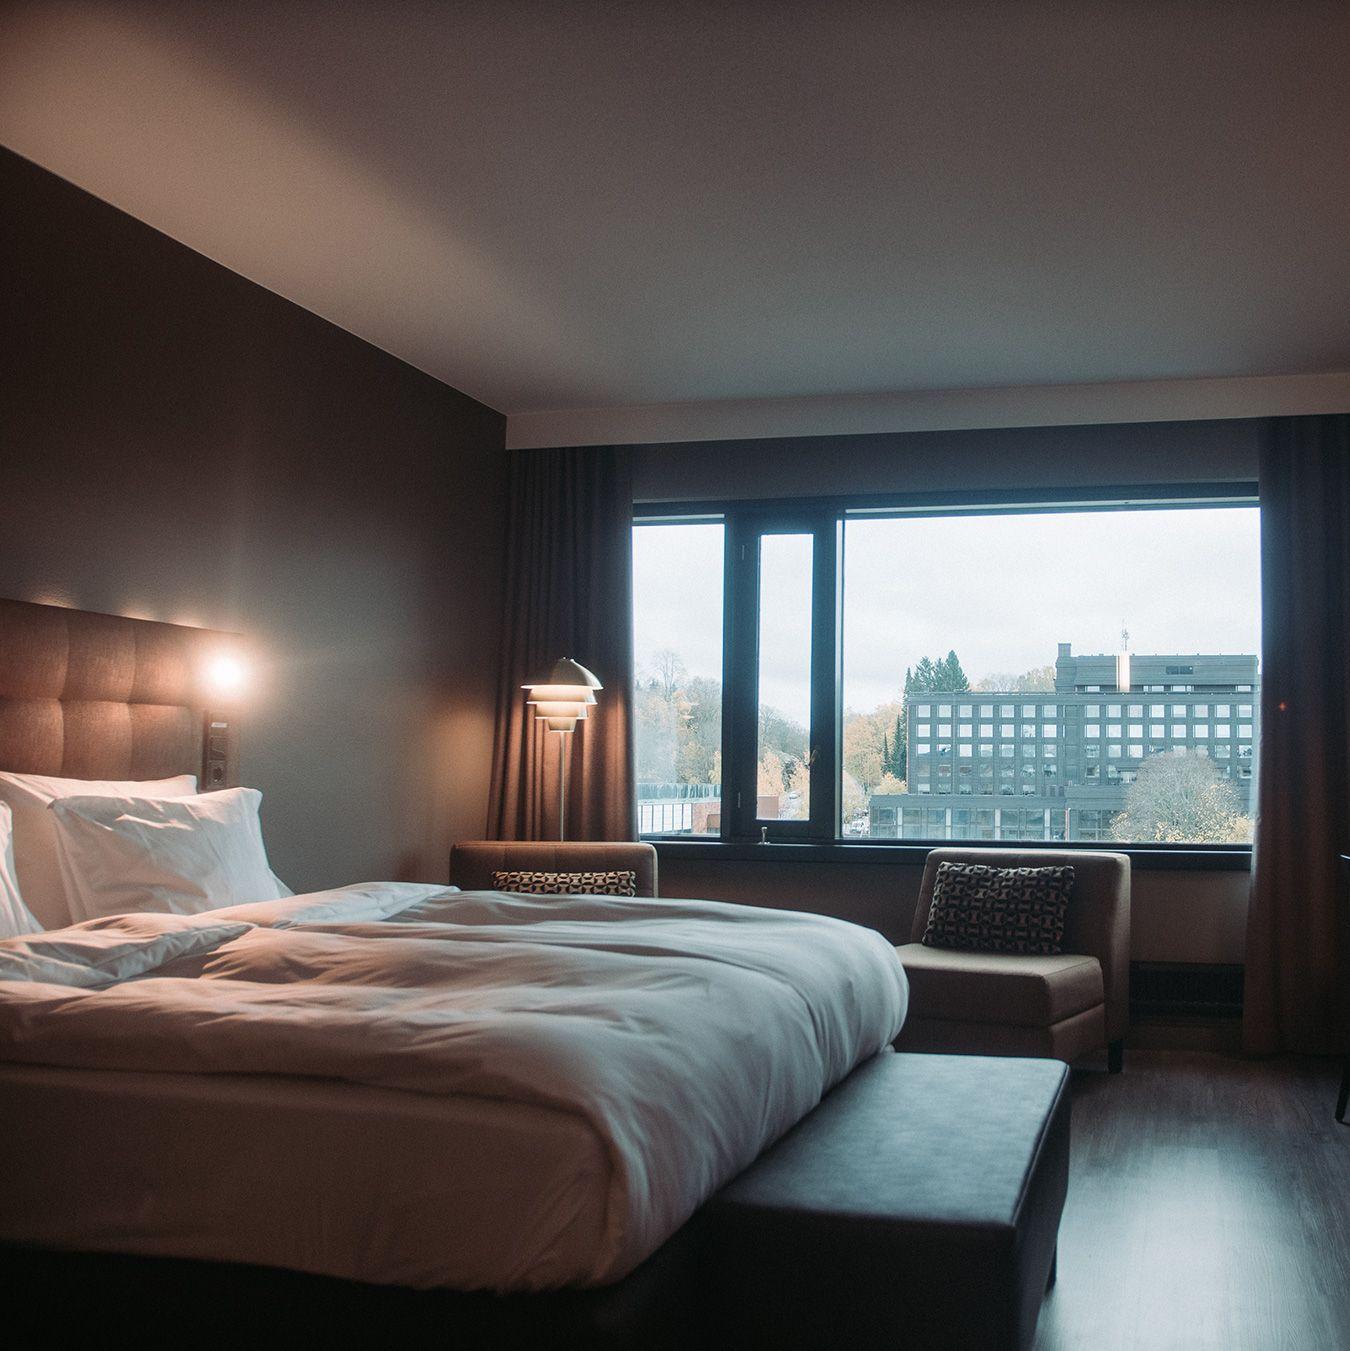 Ett elegant rum på Radisson Blu i Åbo, med en bekväm säng.